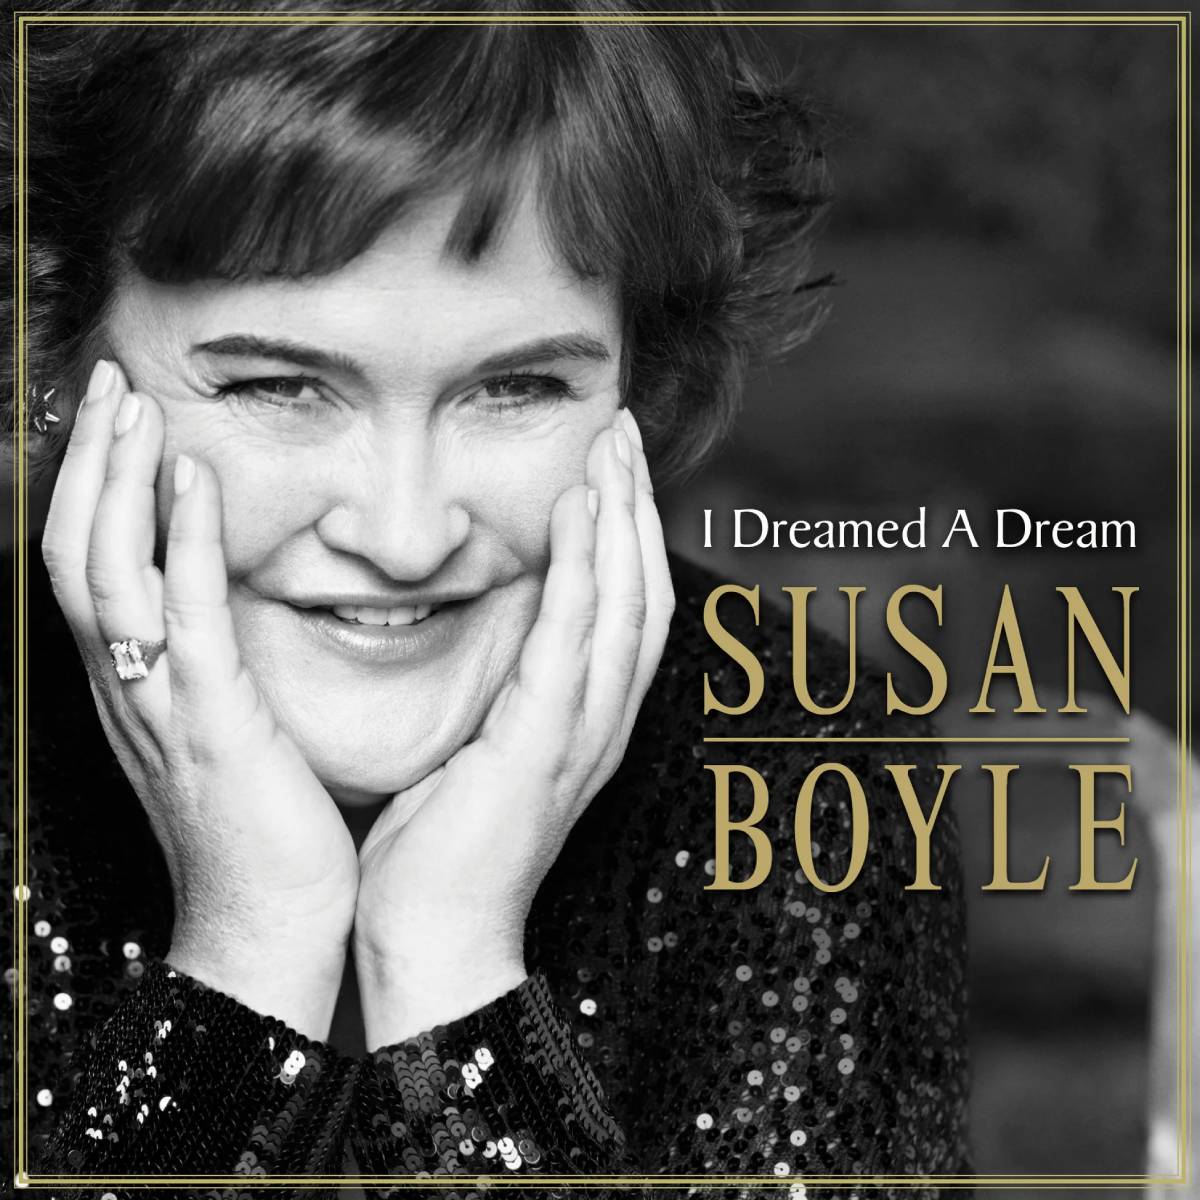 I Dreamed A Dream (álbum musical de Susan Boyle)